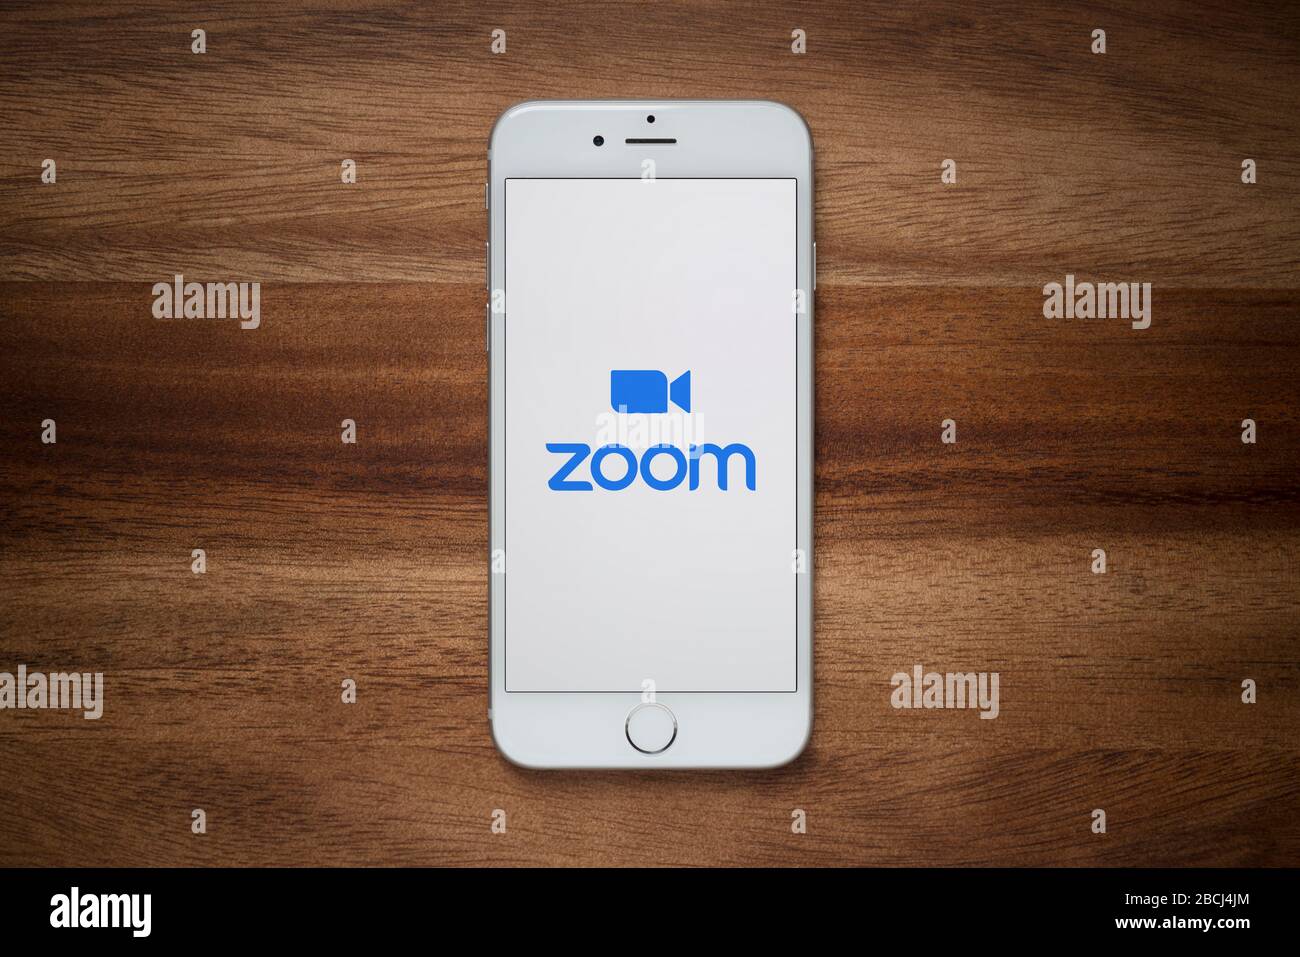 Ein iPhone, auf dem die Website für Videokonferenzen Zoom angezeigt wird, ruht auf einem einfachen Holztisch (nur für redaktionelle Zwecke). Stockfoto